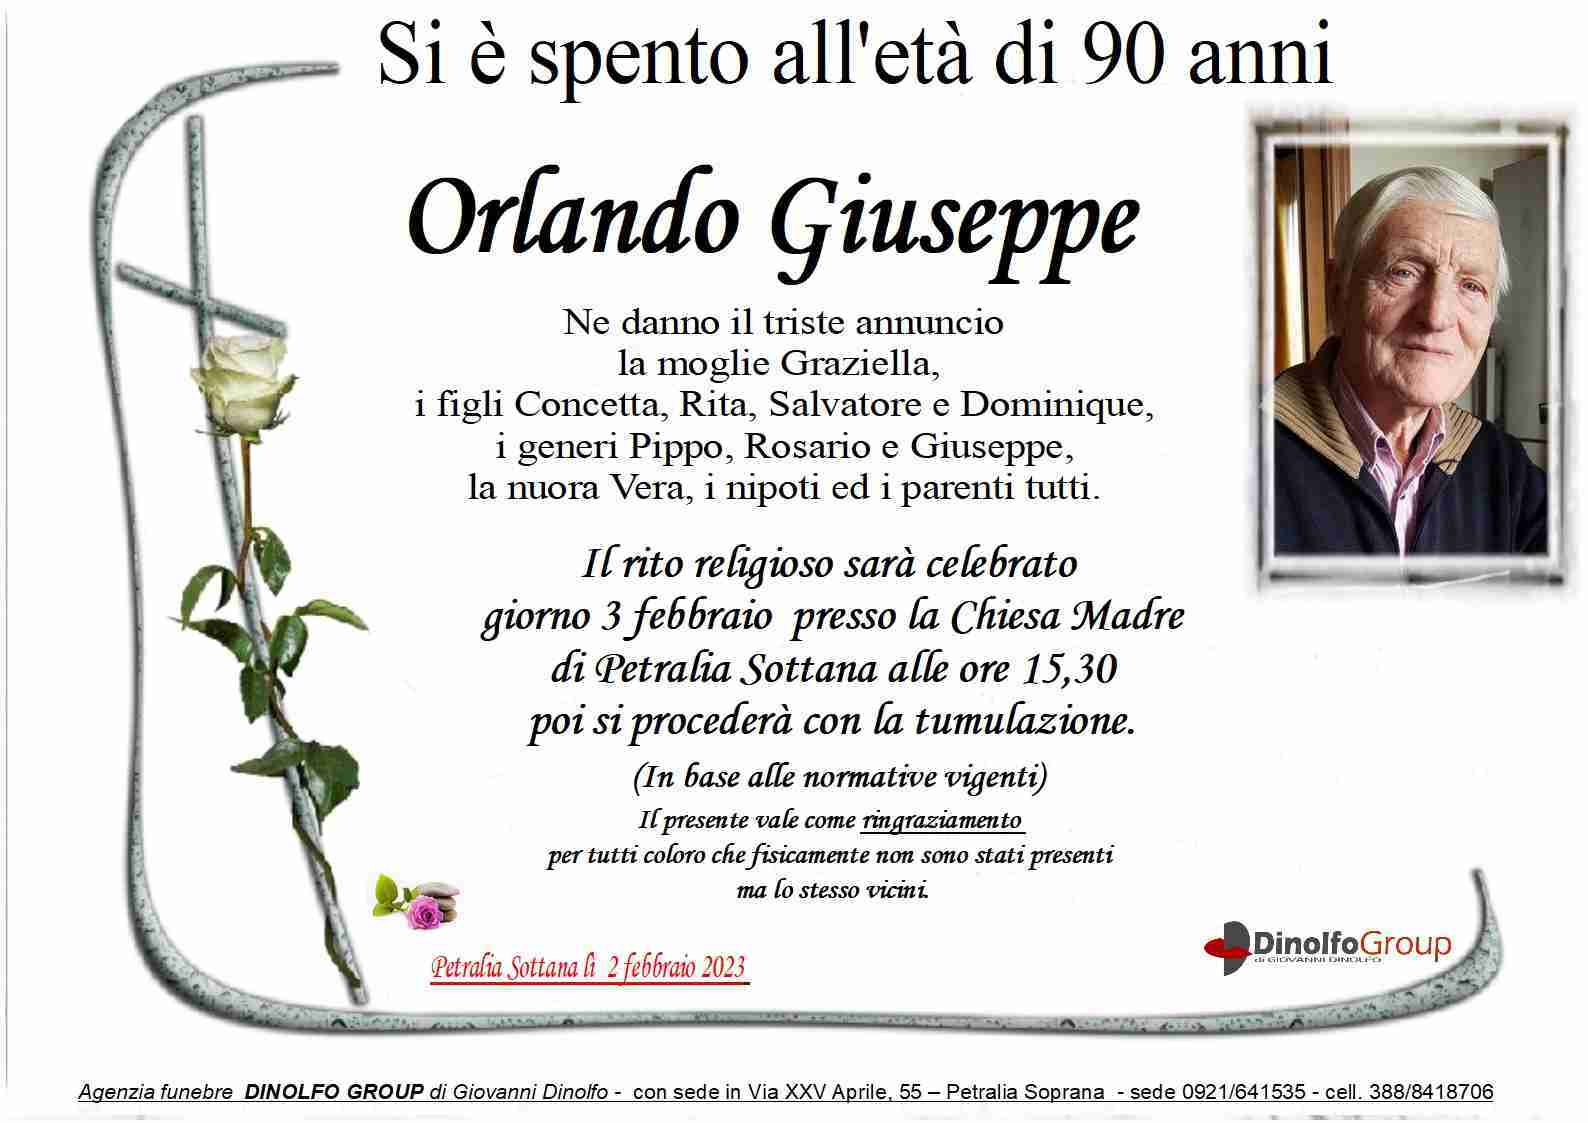 Giuseppe Orlando